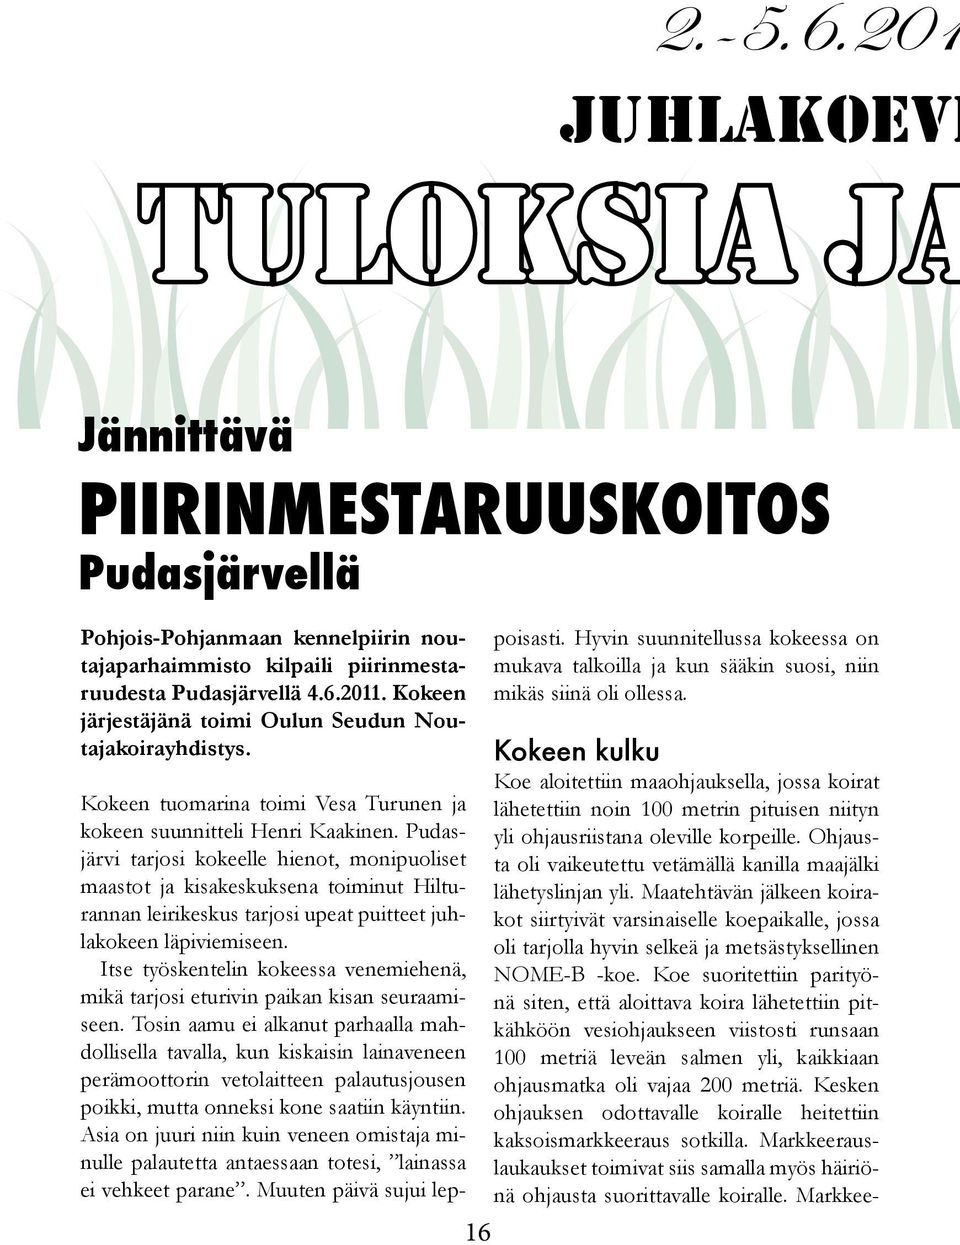 Pudasjärvi tarjosi kokeelle hienot, monipuoliset maastot ja kisakeskuksena toiminut Hilturannan leirikeskus tarjosi upeat puitteet juhlakokeen läpiviemiseen.